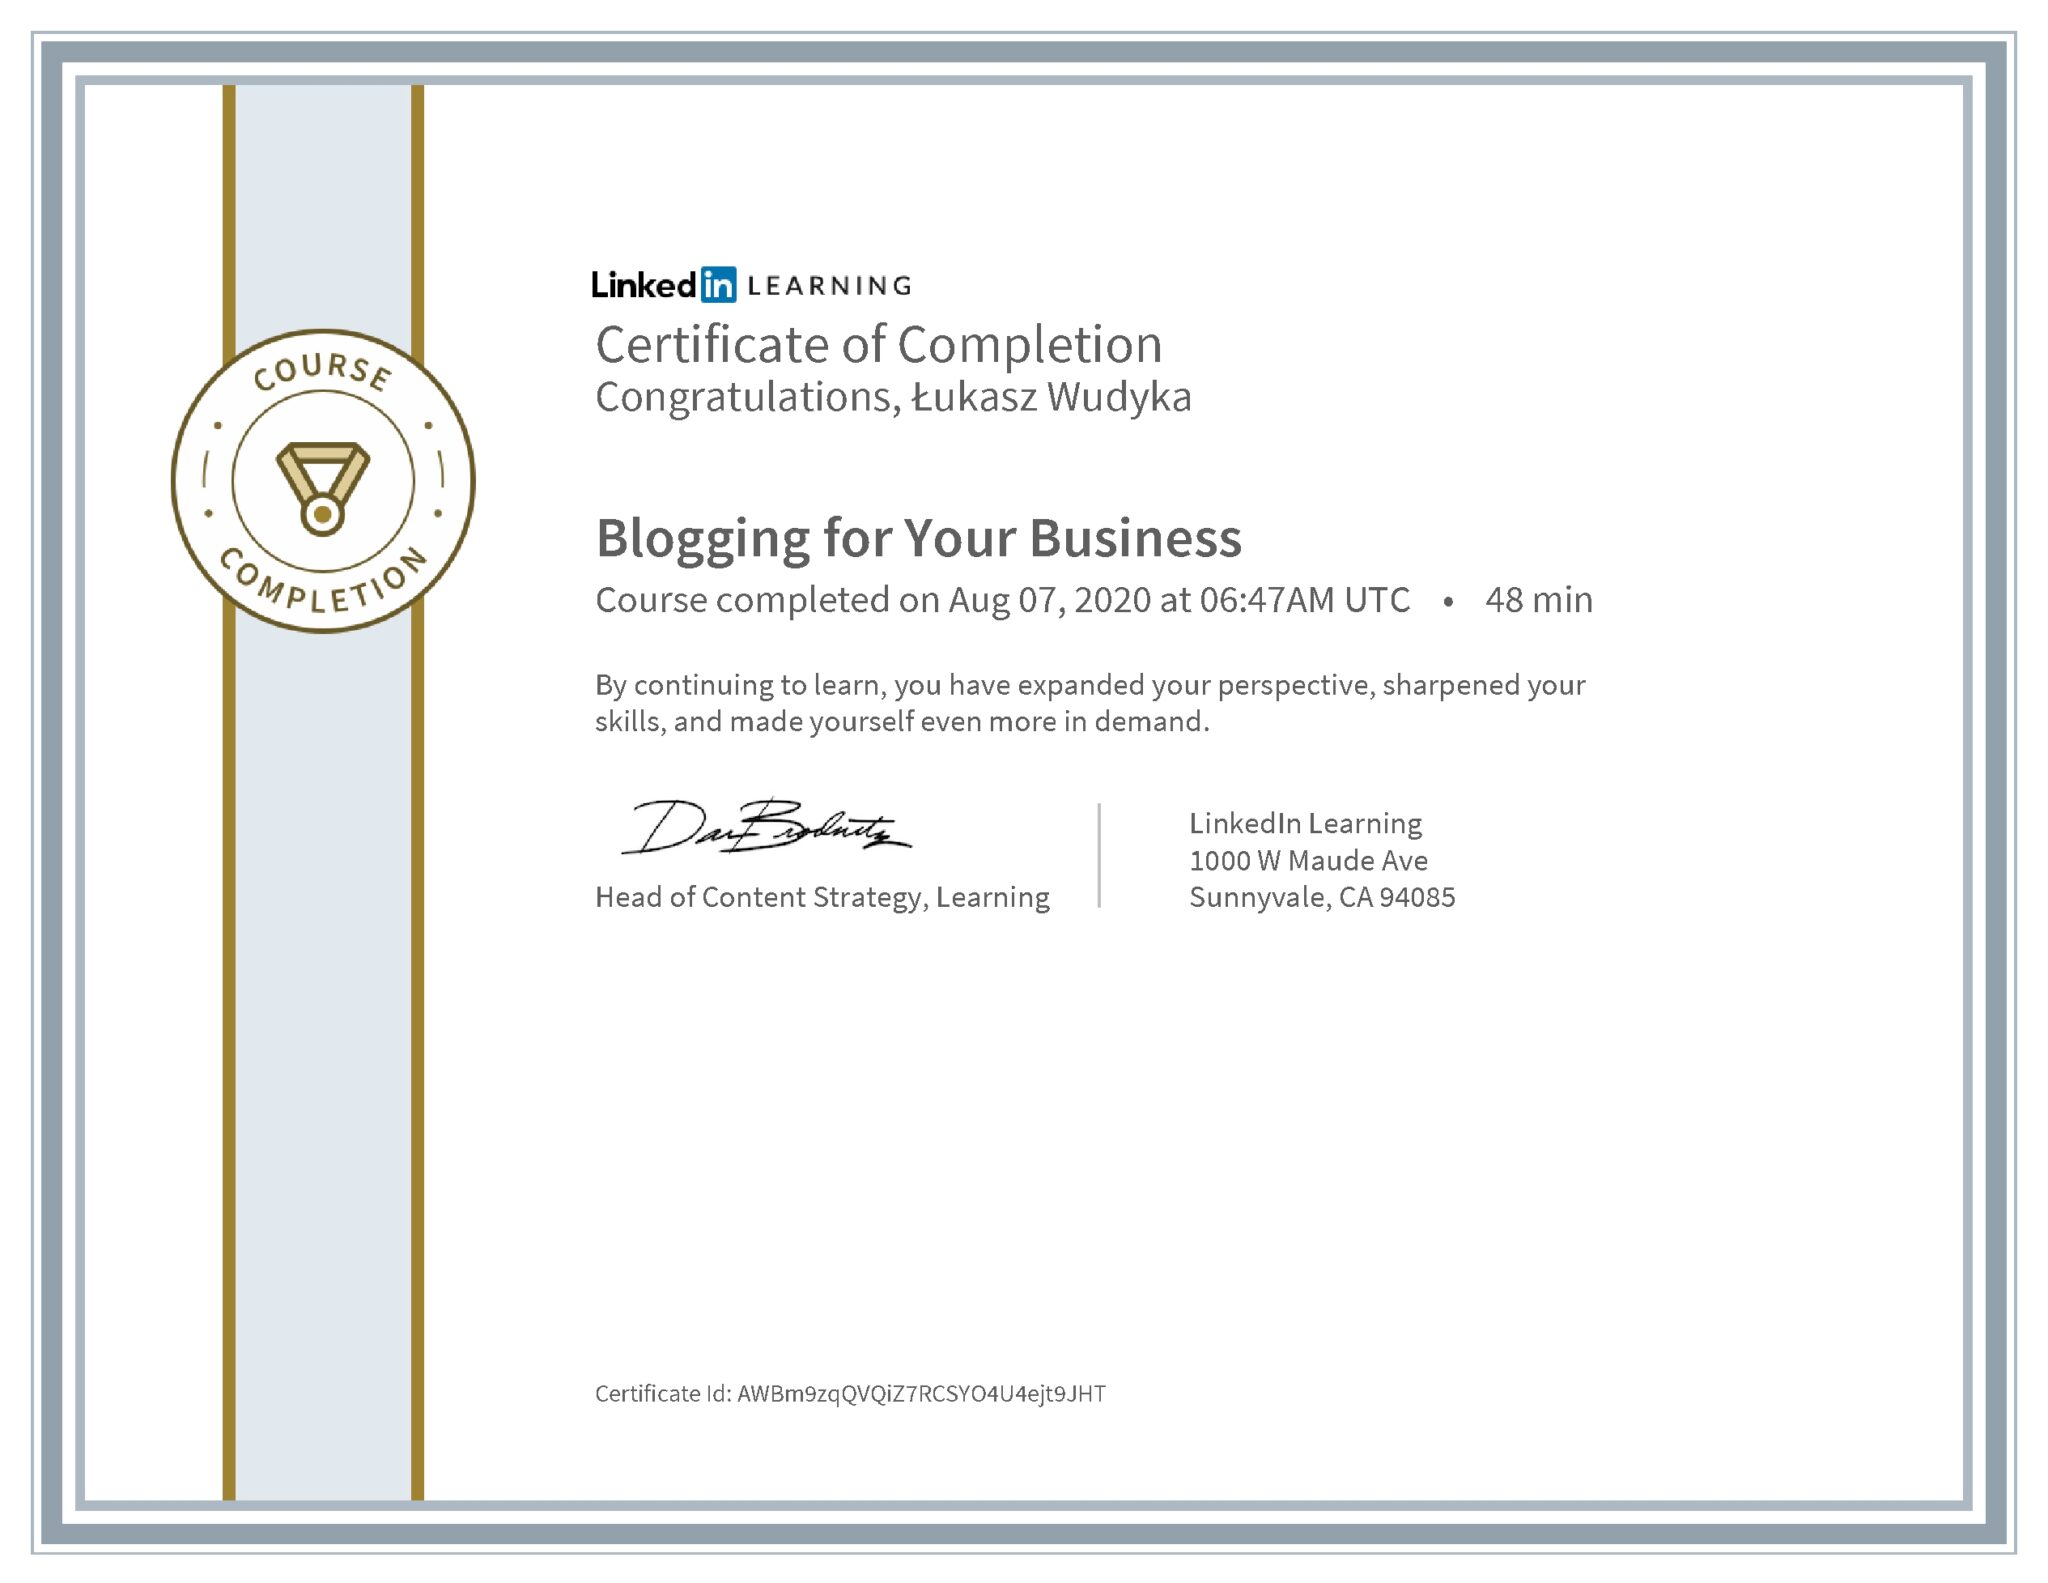 Łukasz Wudyka certyfikat LinkedIn Blogging for Your Business